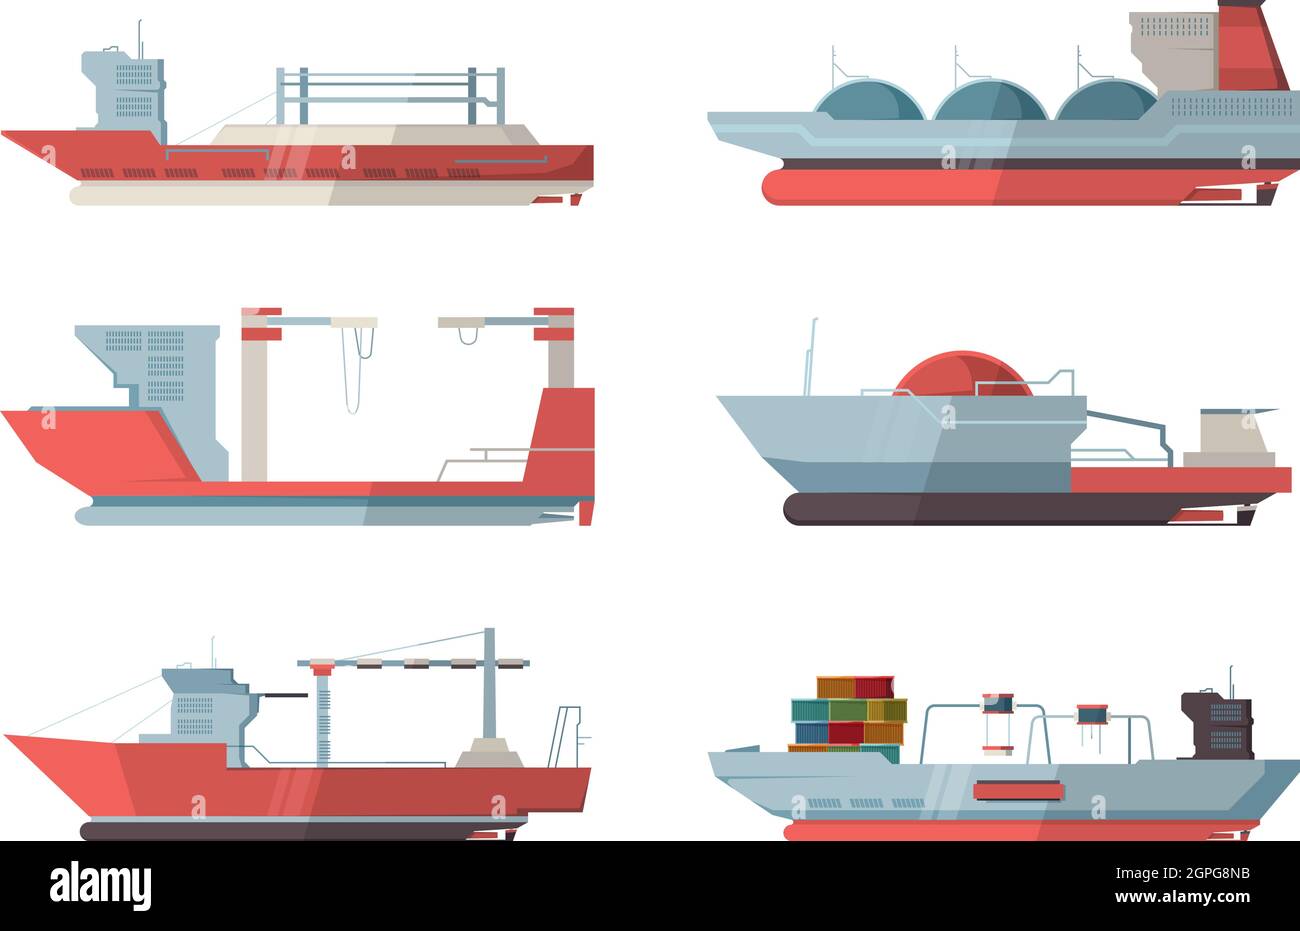 Frachtschiff. Seeschiff Ozeanschiff mit Kran und Container Vektor flache Bilder Stock Vektor